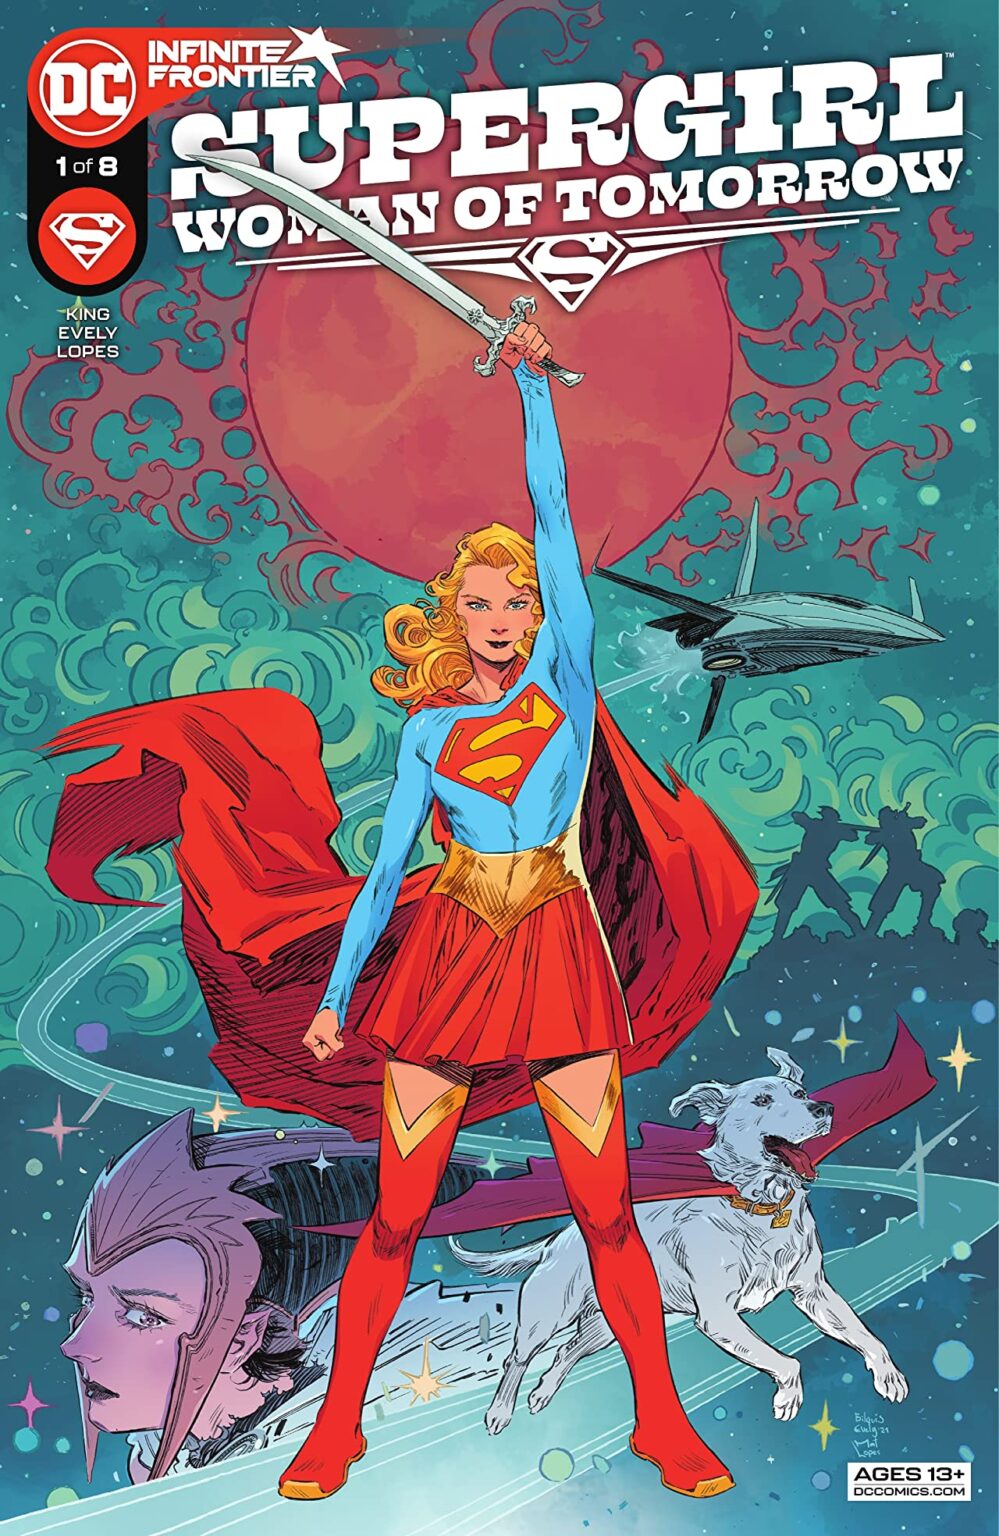 17 - Les comics que vous lisez en ce moment - Page 19 Supergirl-999x1536